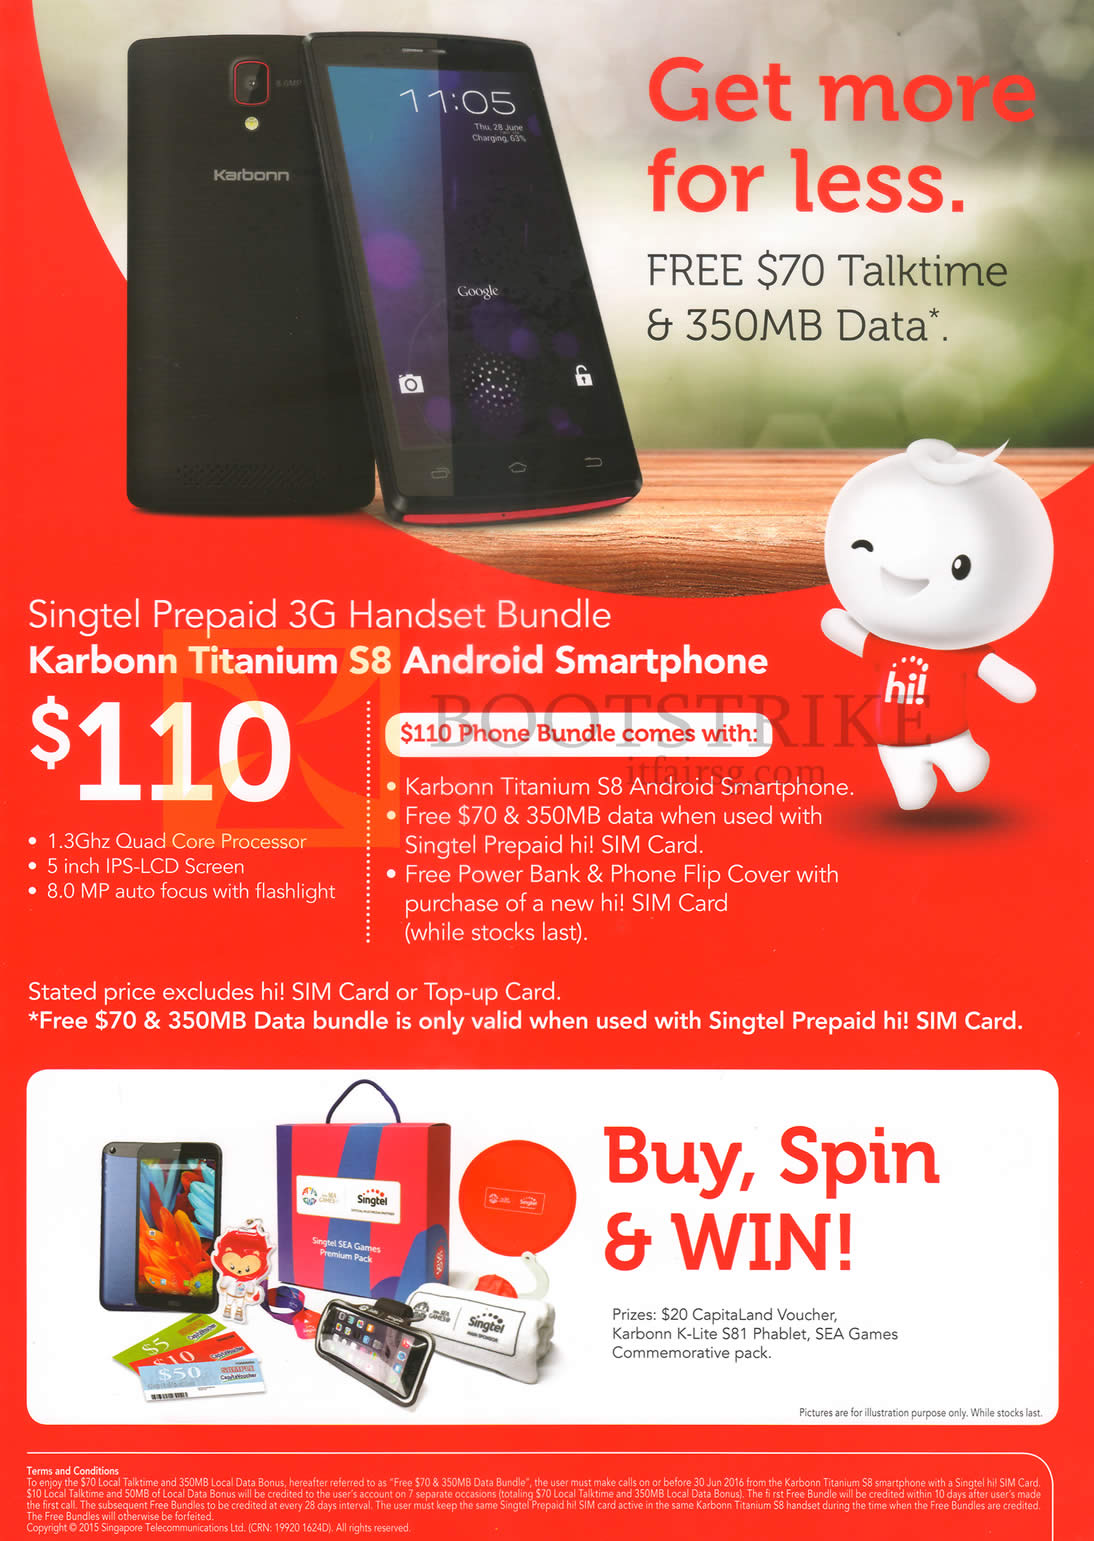 PC SHOW 2015 price list image brochure of Singtel Prepaid 3G Handset Bundle, Karbonn Titanium S8, Buy Spin Win